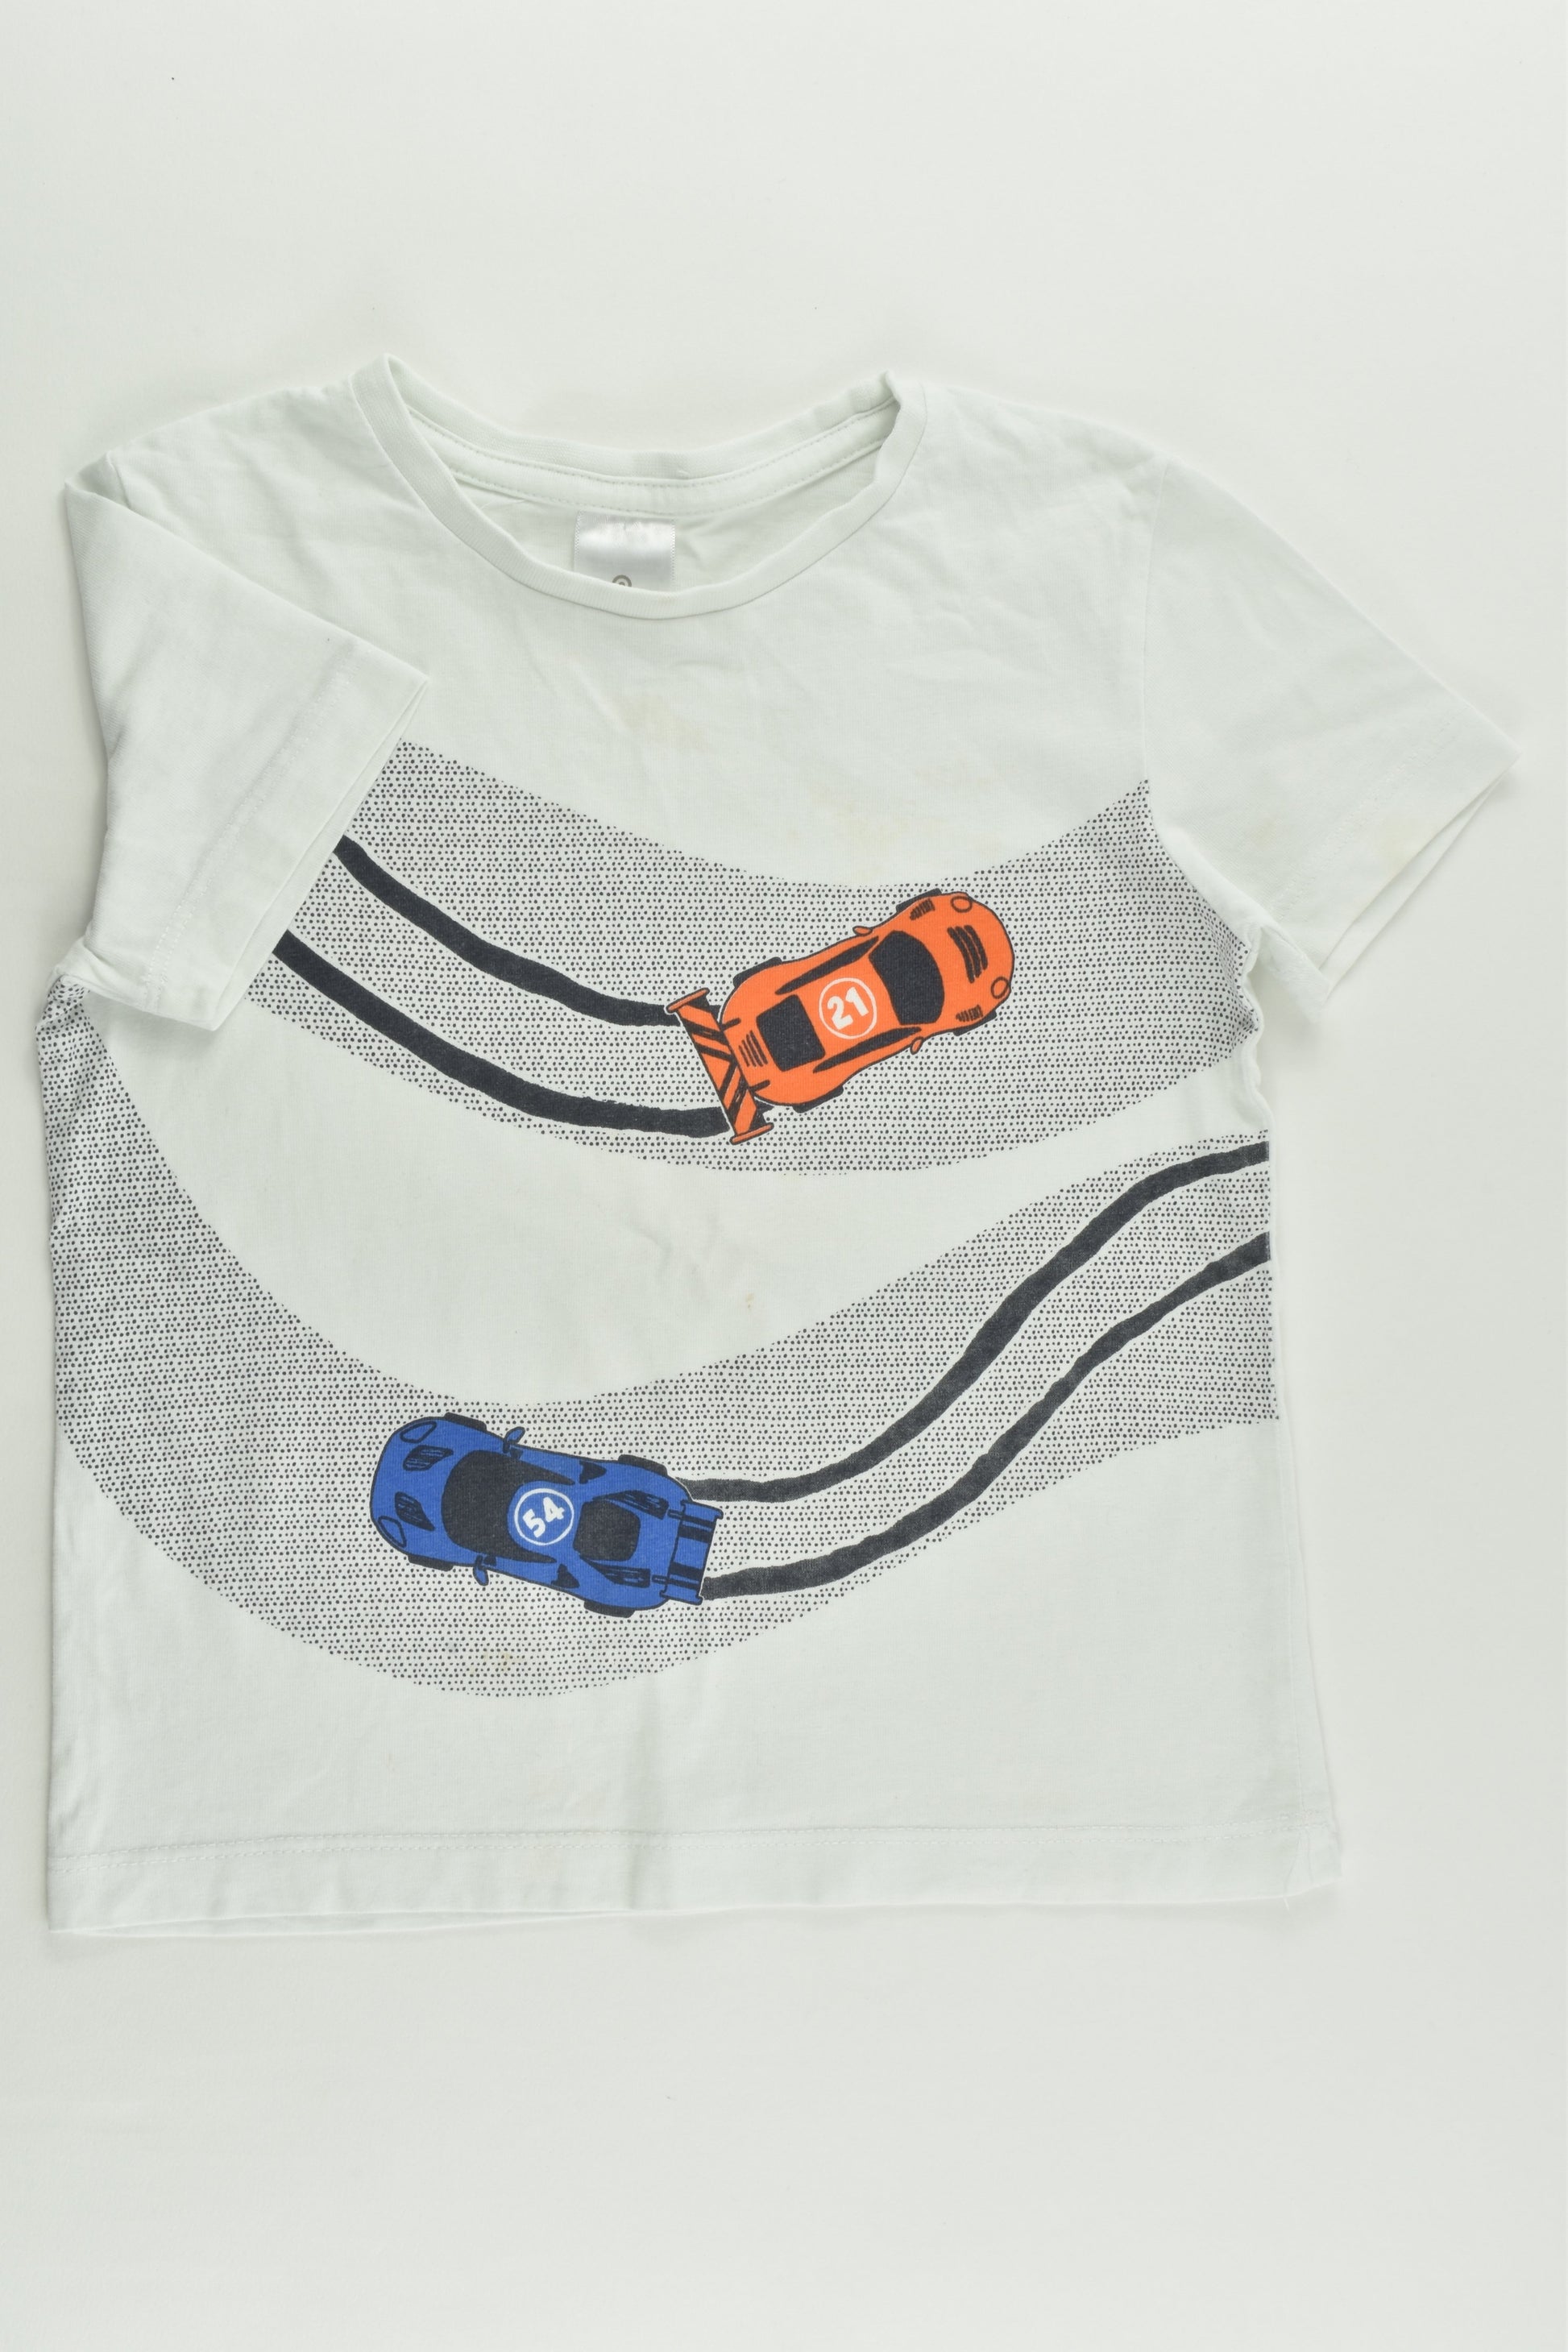 Target Size 3 Racing Cars T-shirt